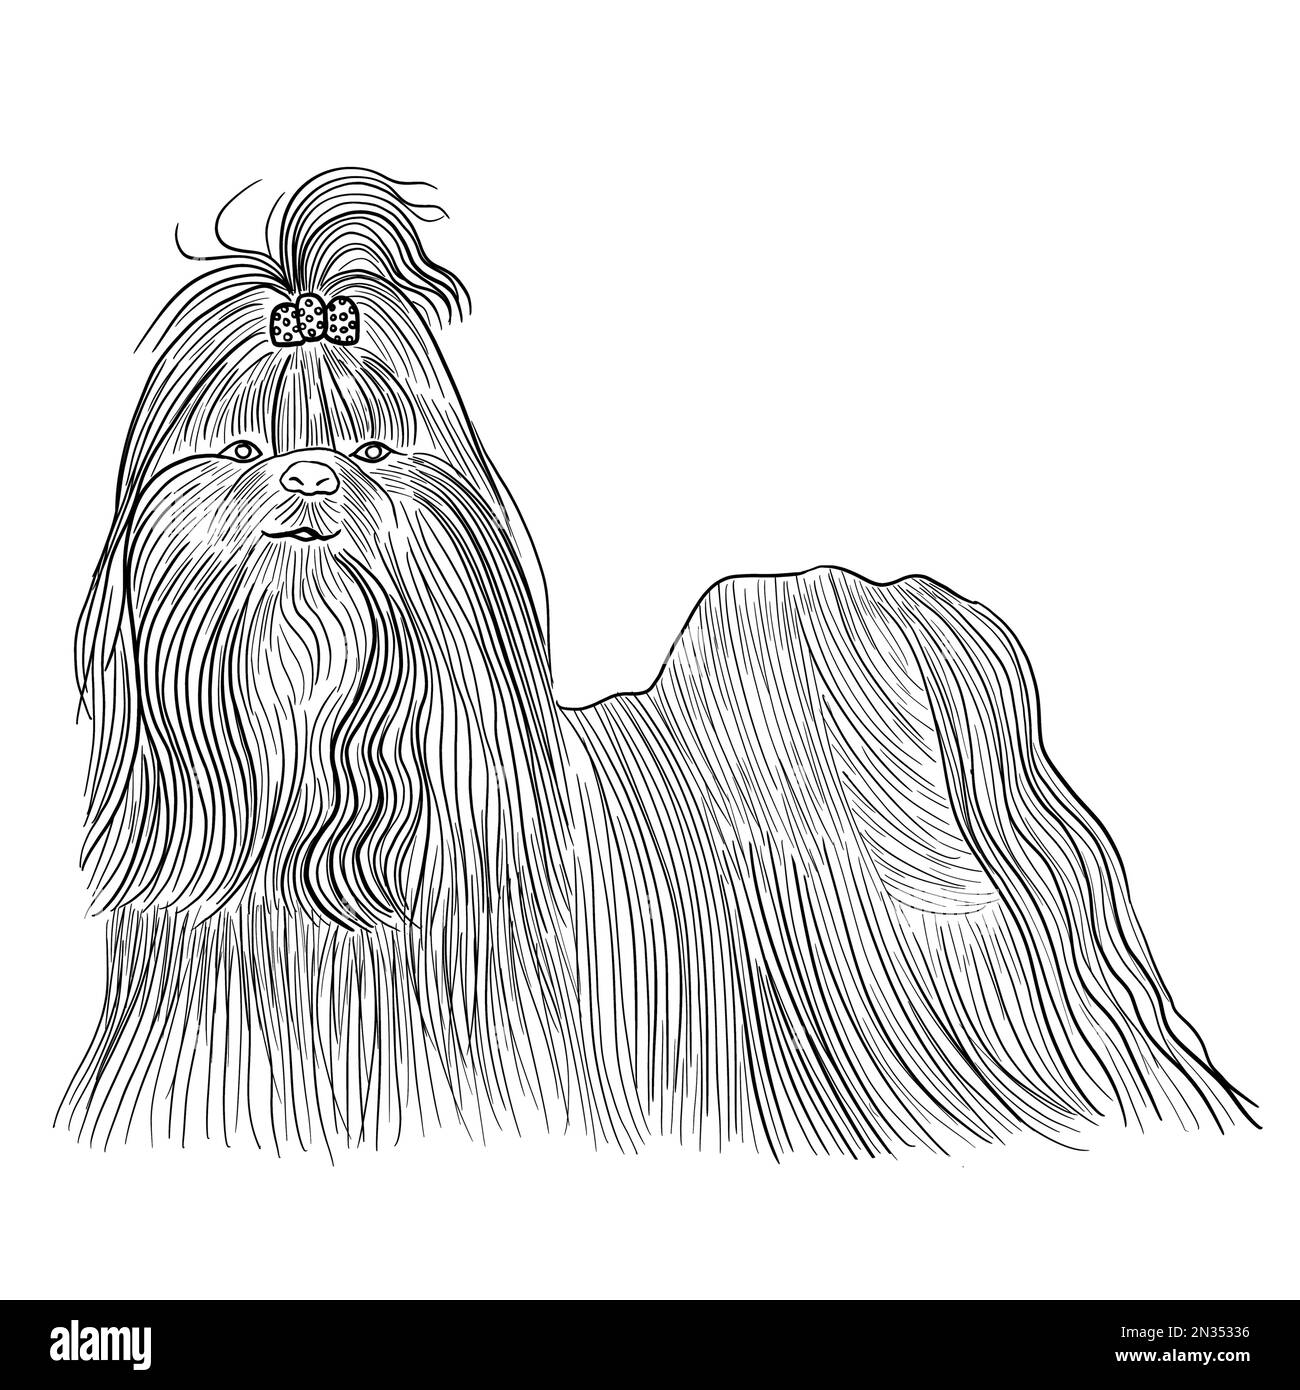 Disegno di un cane shitzu con capelli lunghi e un arco sulla testa, in bianco e nero. Animale domestico accompagnatore, cane purebred. Foto Stock